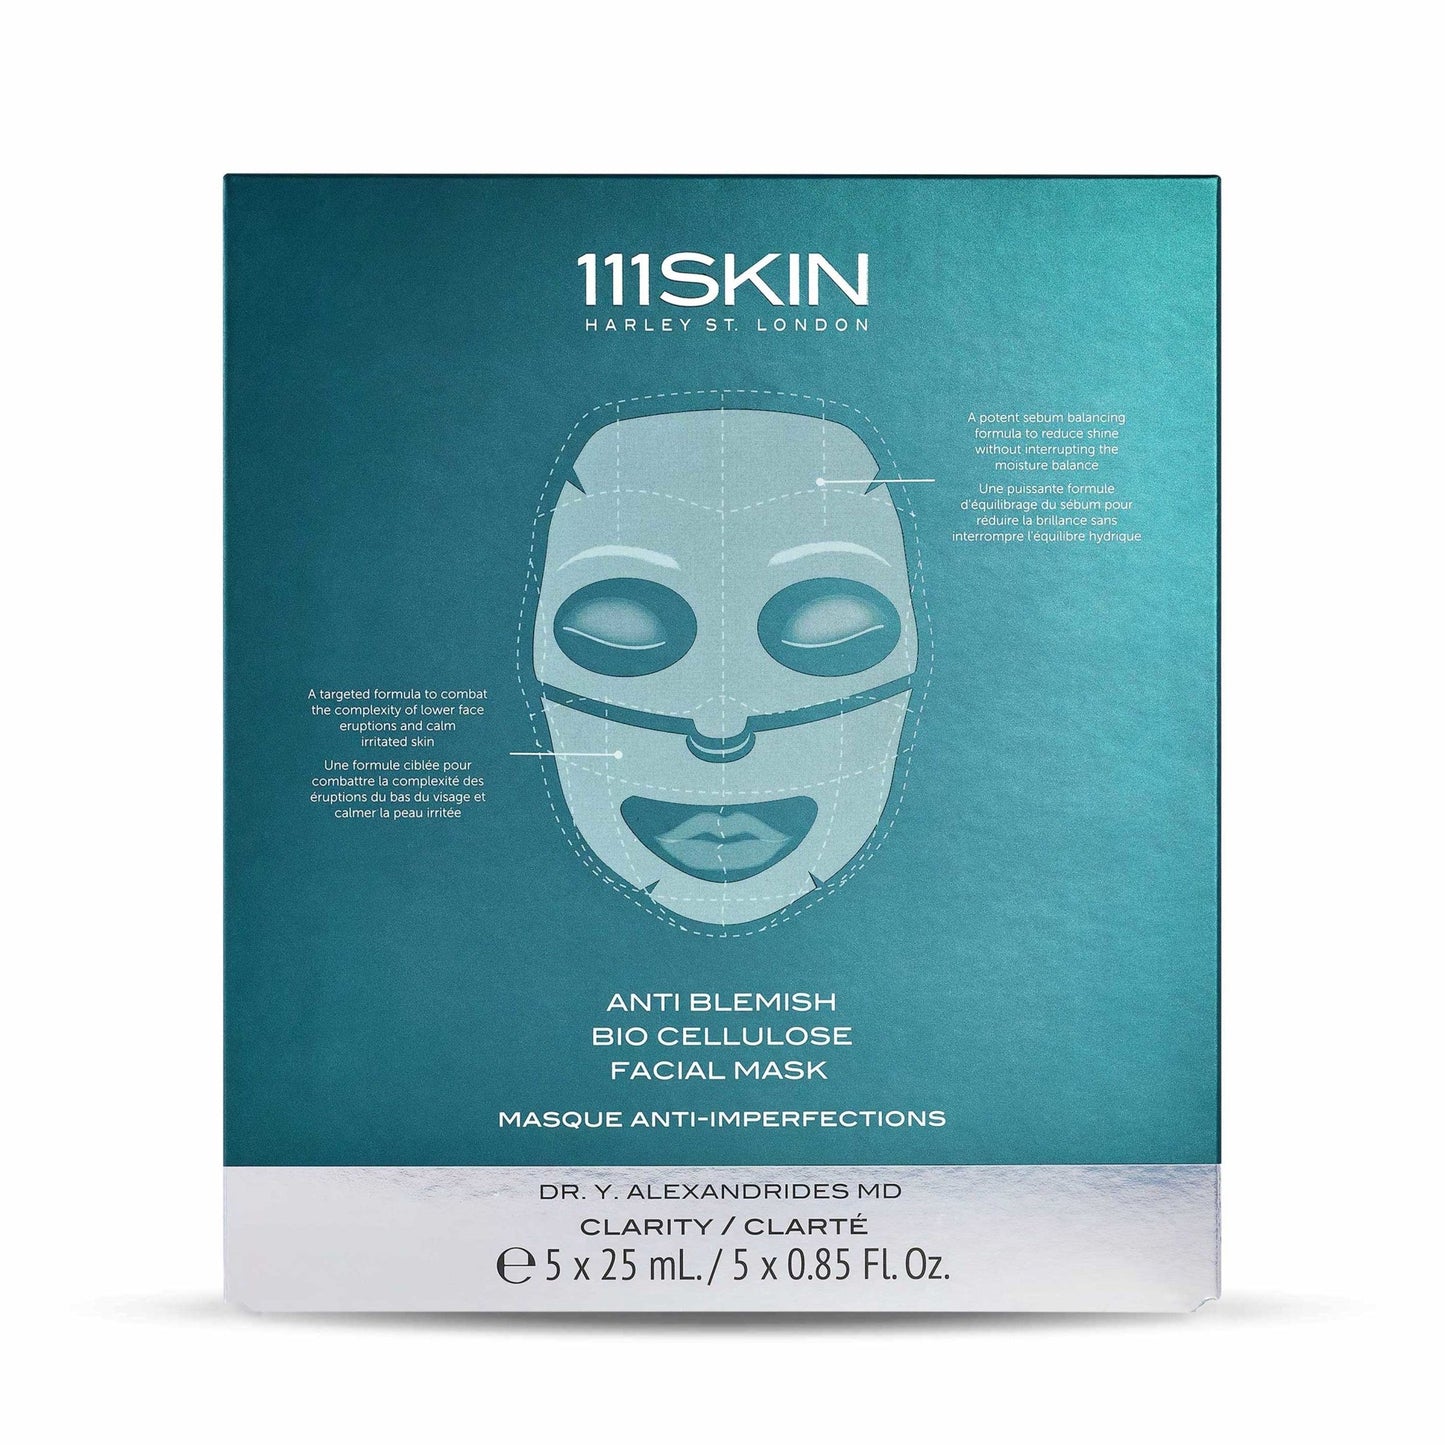 Anti Blemish Bio Cellulose Facial Mask - 111SKIN UK